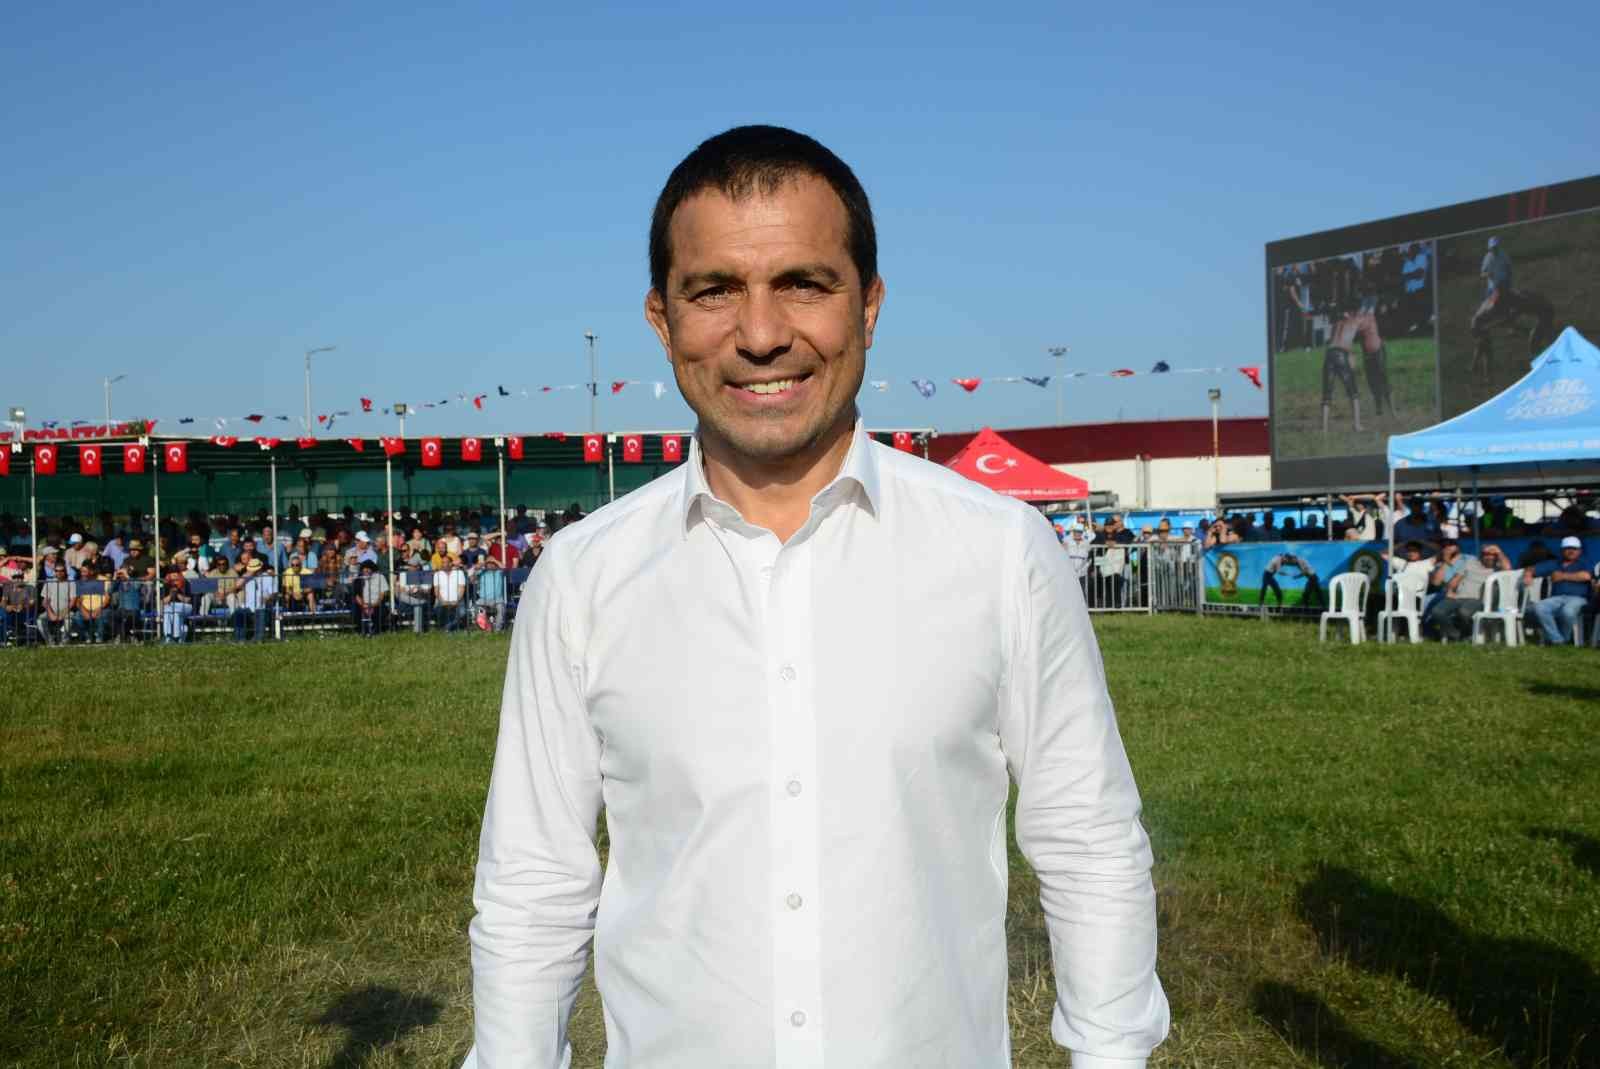 Türkiye Güreş Federasyonu Başkanı Şeref Eroğlu, Kocaeli’de düzenlenen güreş organizasyonuna katıldı. Türkiye’nin güreşte oldukça başarılı ...